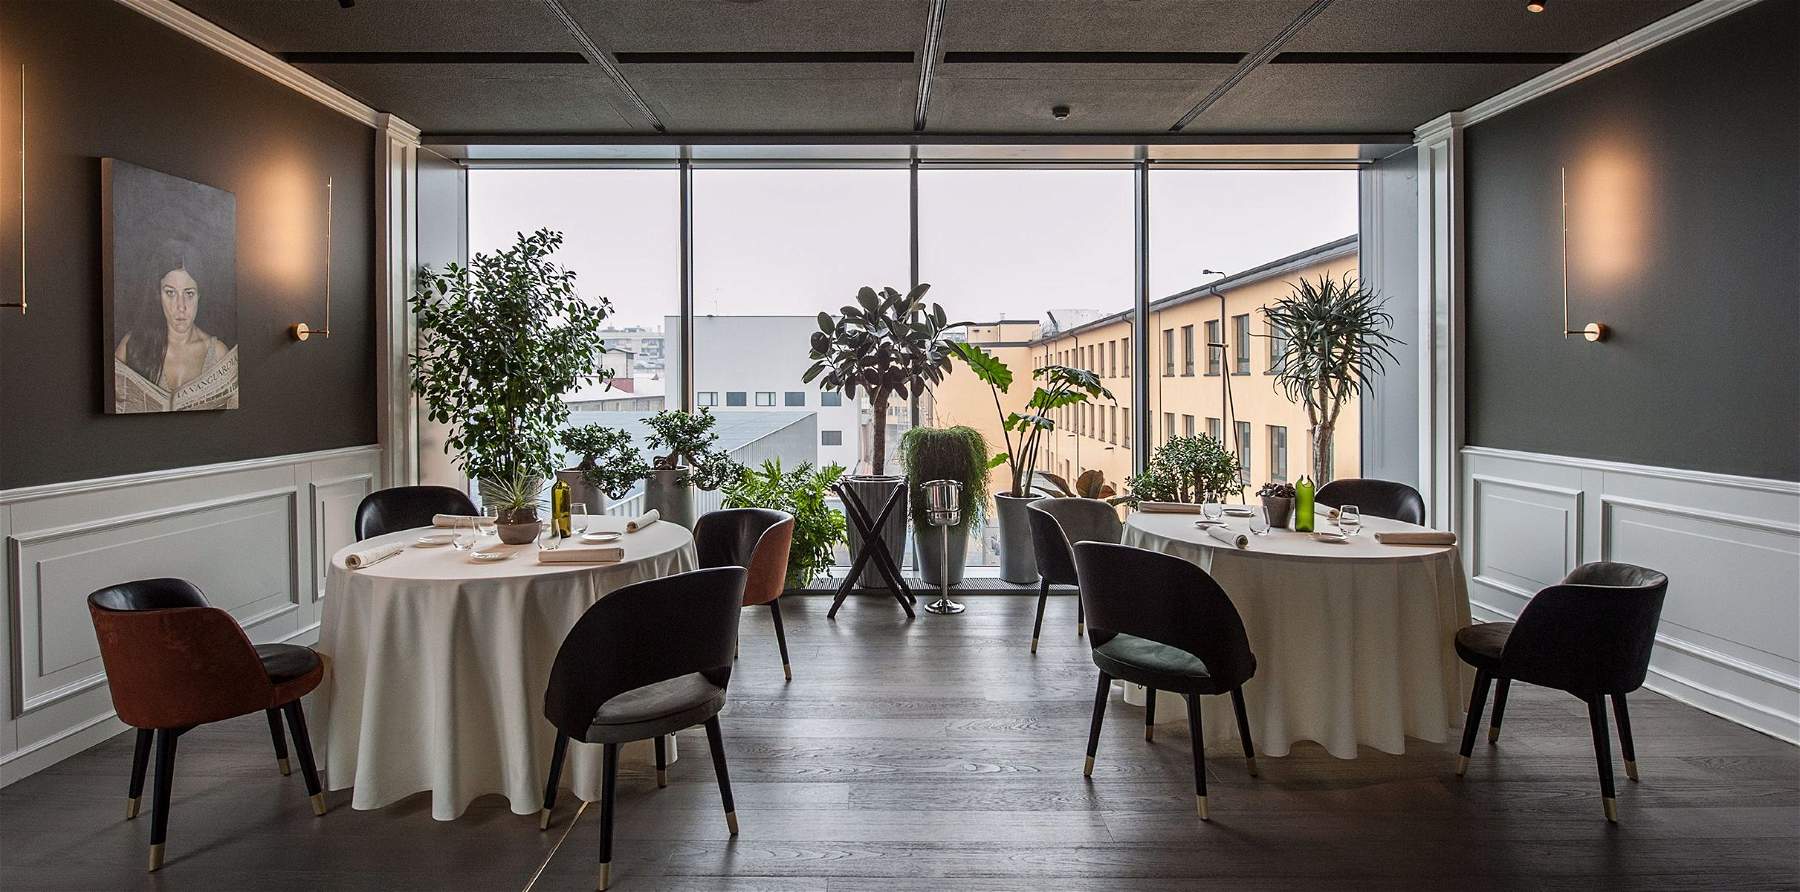 Il existe un musée qui possède désormais un restaurant trois étoiles Michelin : il s'agit du Mudec à Milan. 